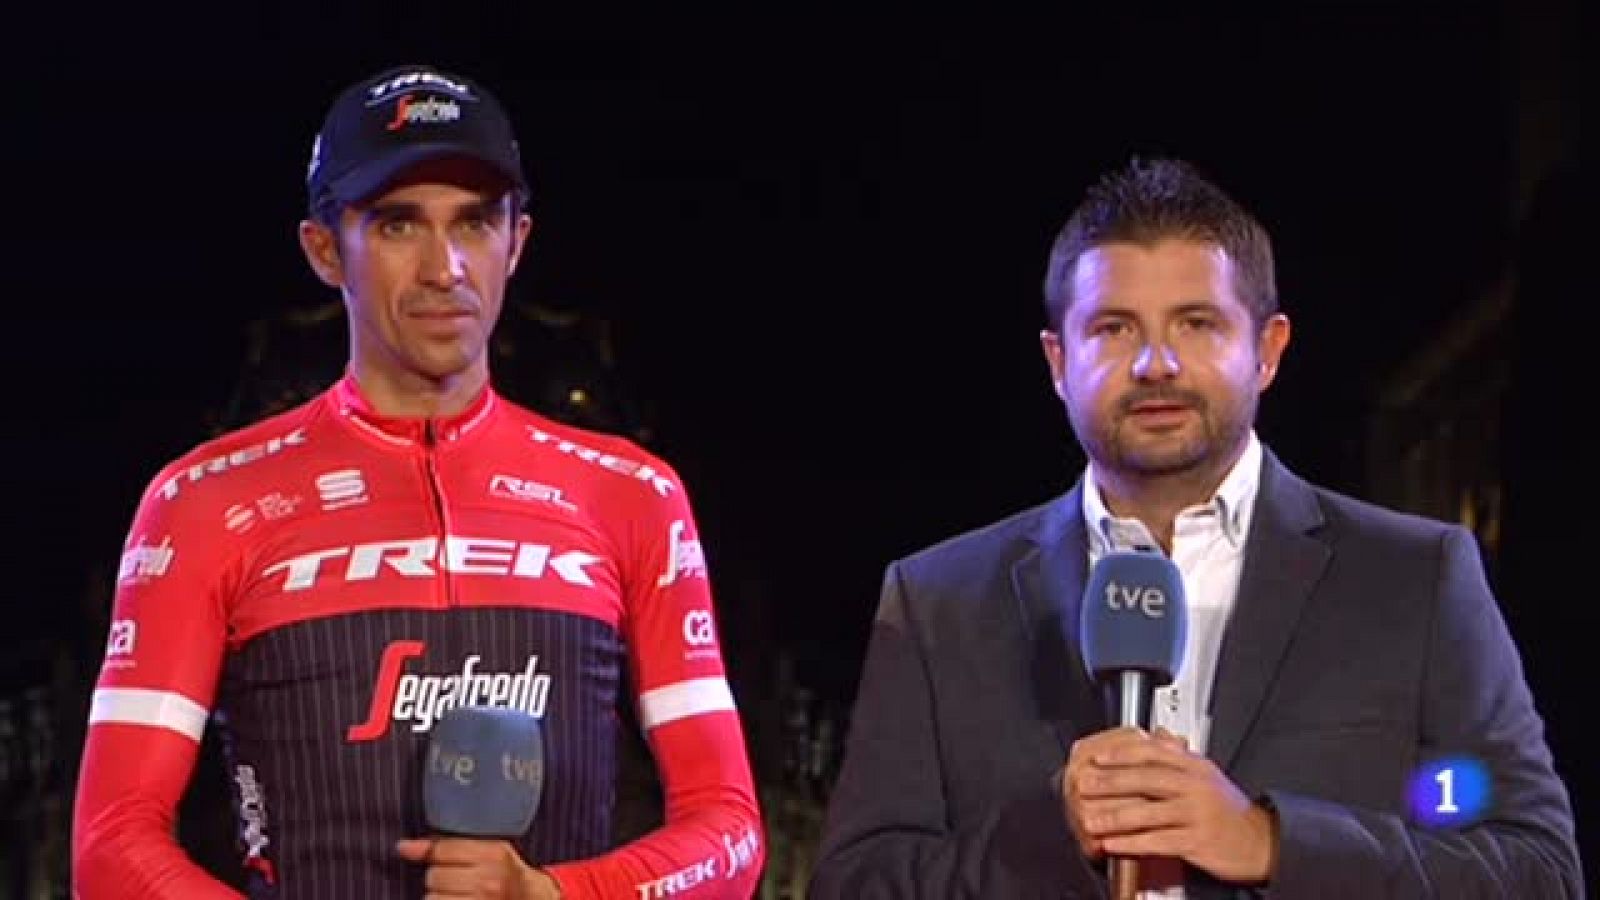 Alberto Contador se ha retirado del ciclismo profesional en la Plaza de Cibeles de Madrid aclamado por la multitud pero sin derramar lágrimas, como hizo ayer tras su épico triunfo en L'Angrilu.